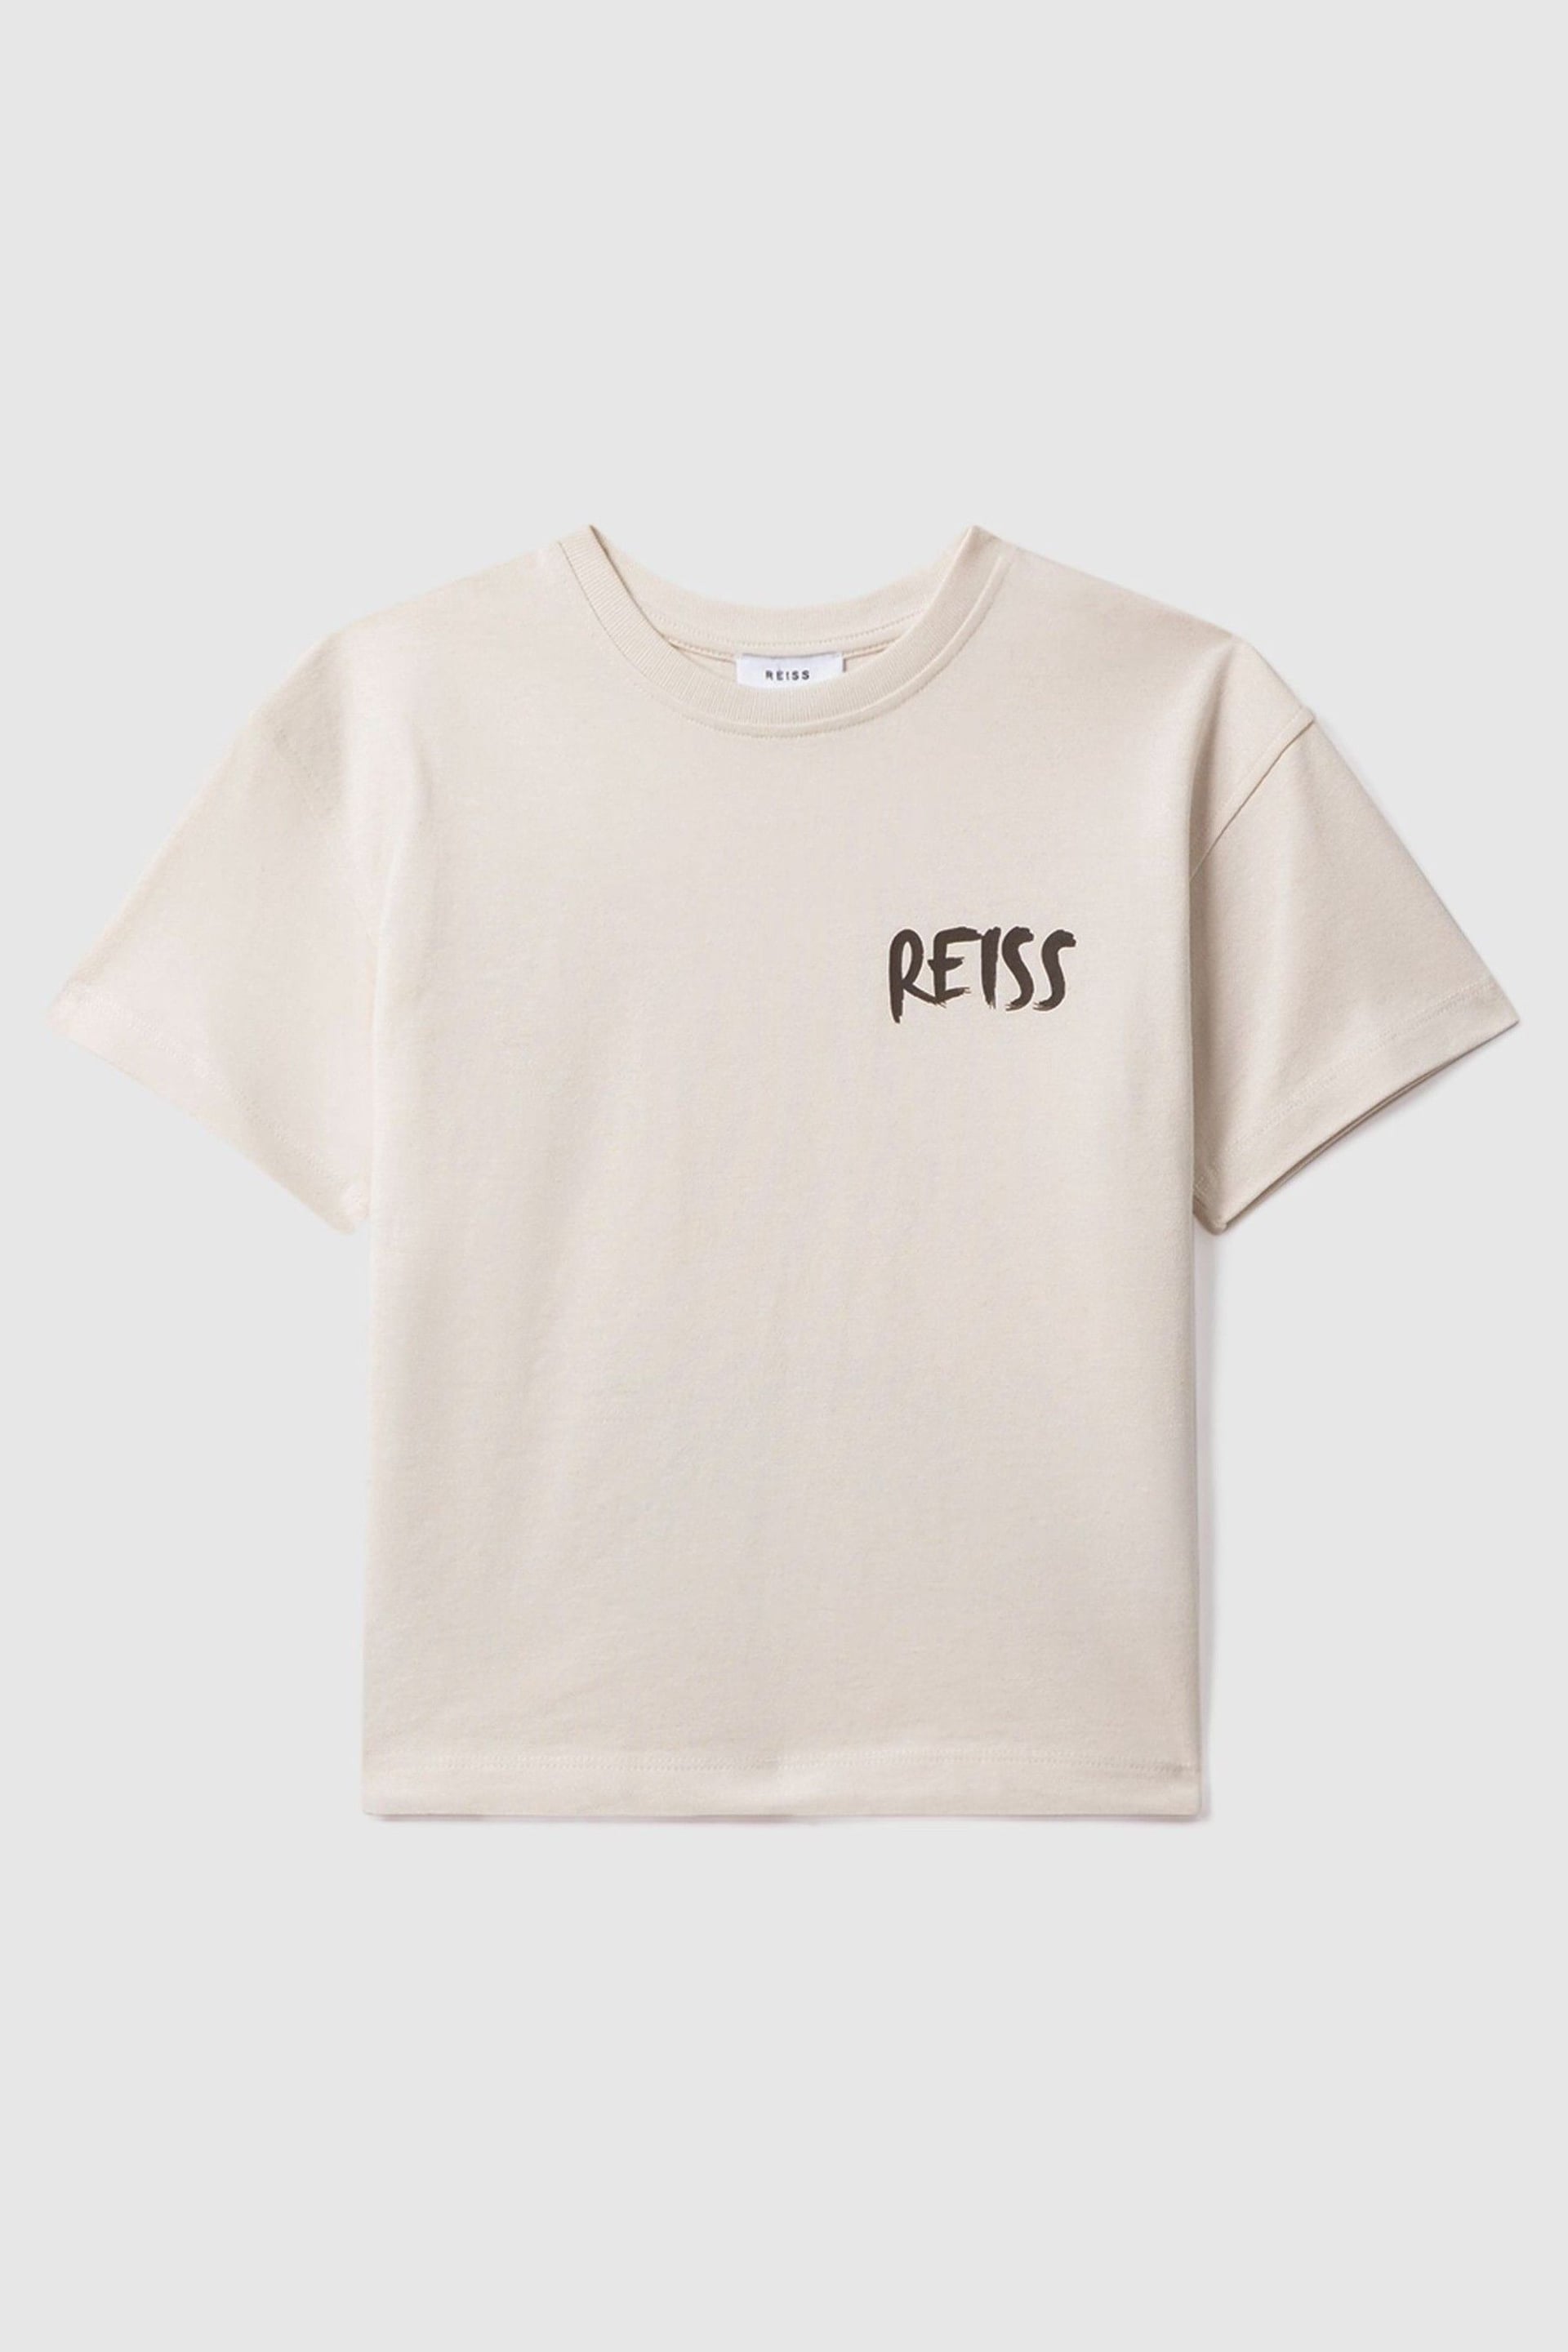 Reiss Ecru Abbott Teen Cotton Motif T-Shirt - Image 1 of 6